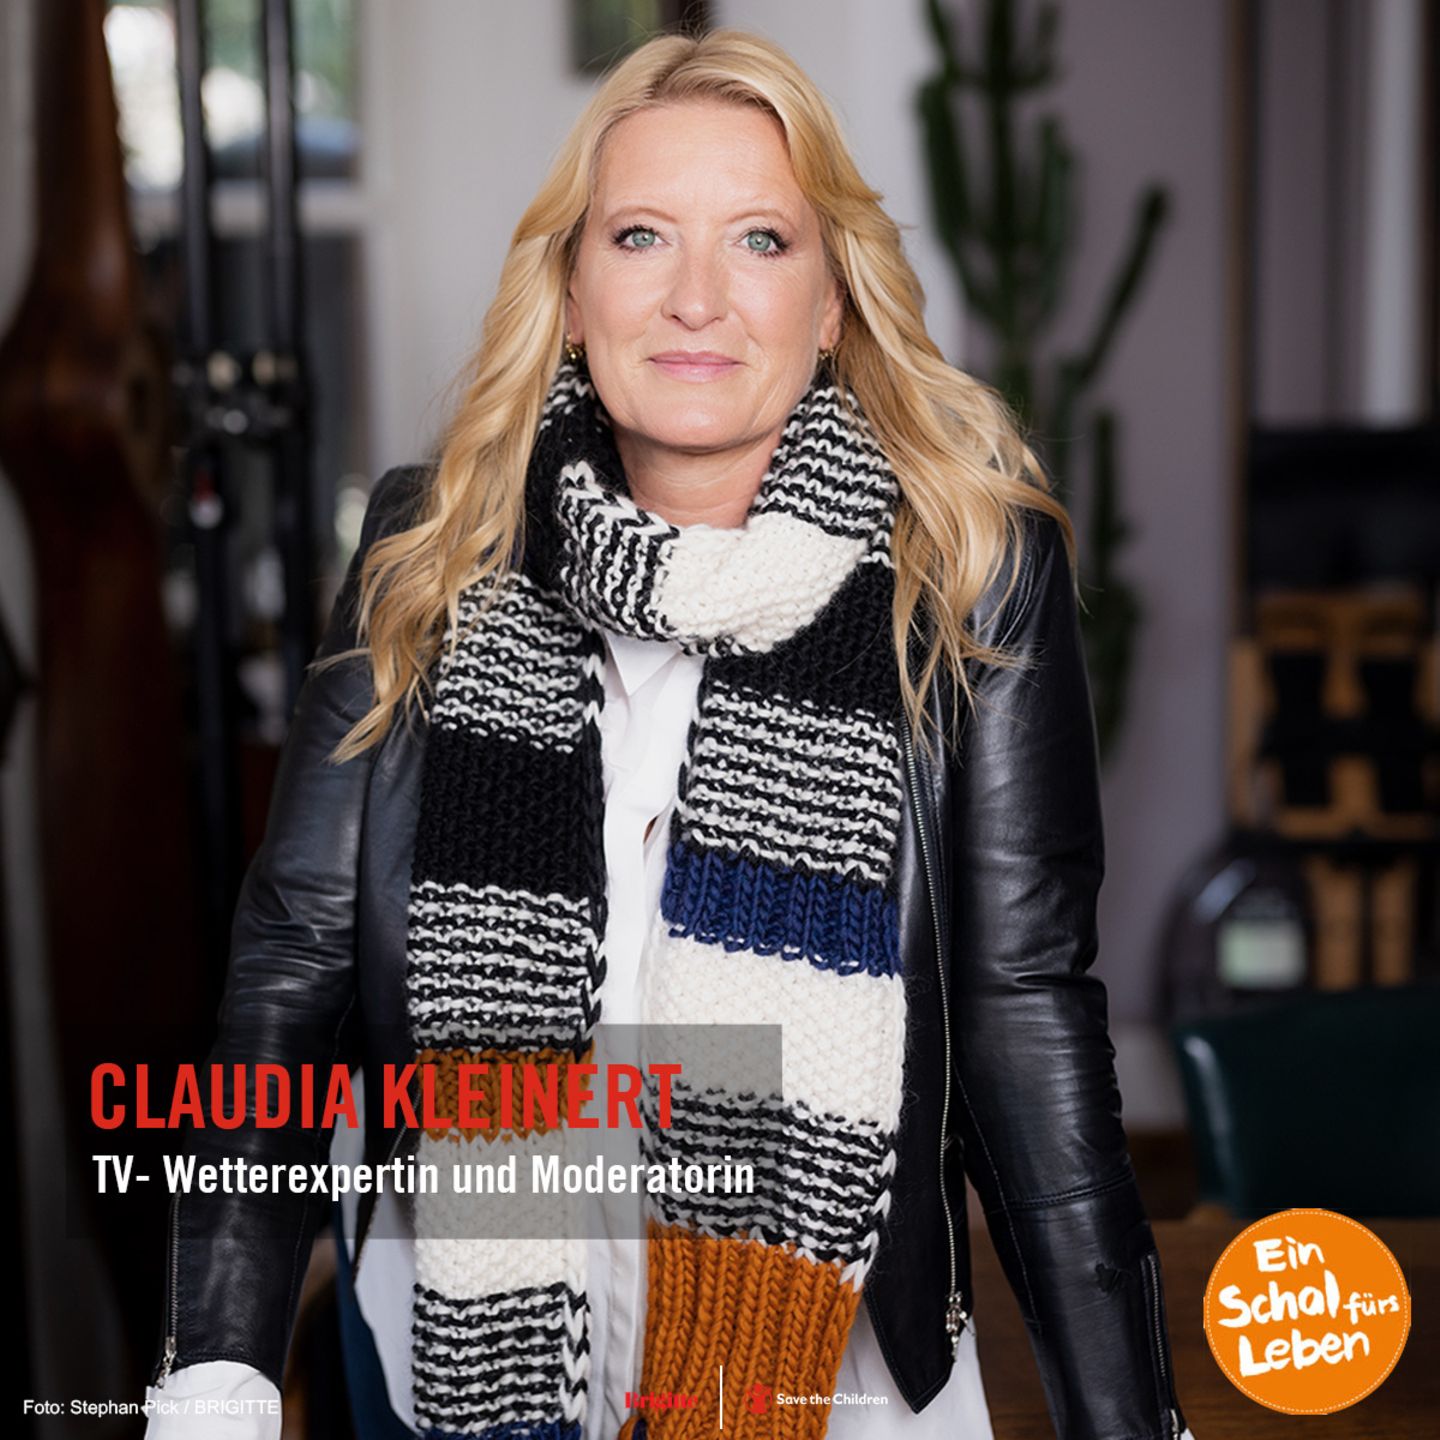 Schal fürs Leben - Claudia Kleinert